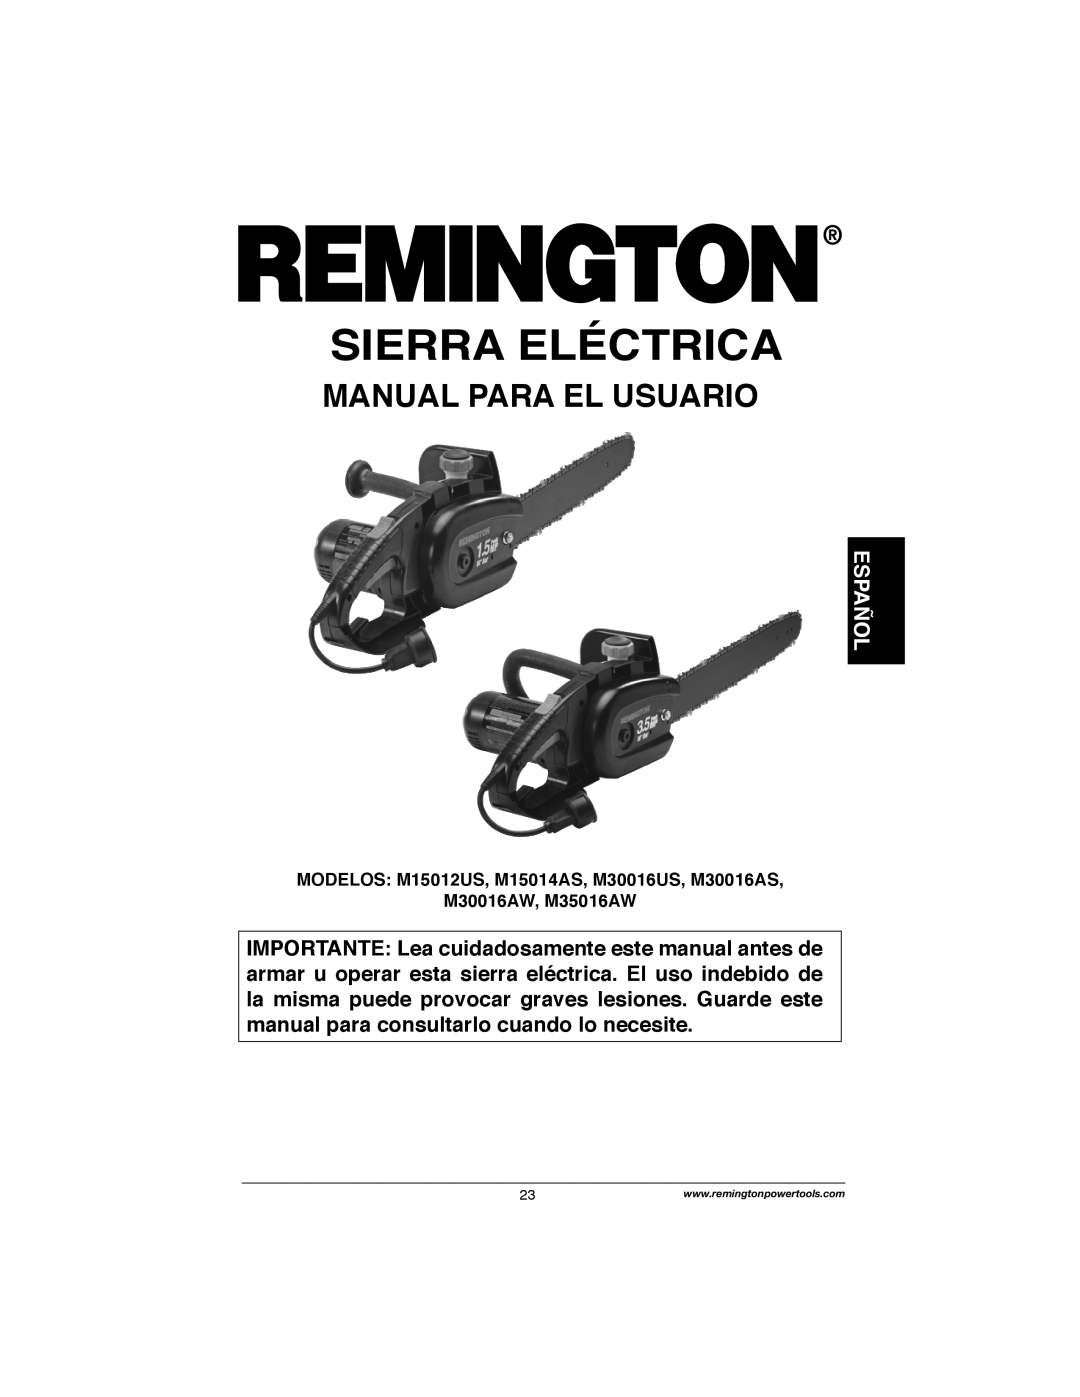 Remington Power Tools M30016AW, M30016AS, M15014AS, M15012US, M35016AW Sierra Eléctrica, Manual Para El Usuario, Español 